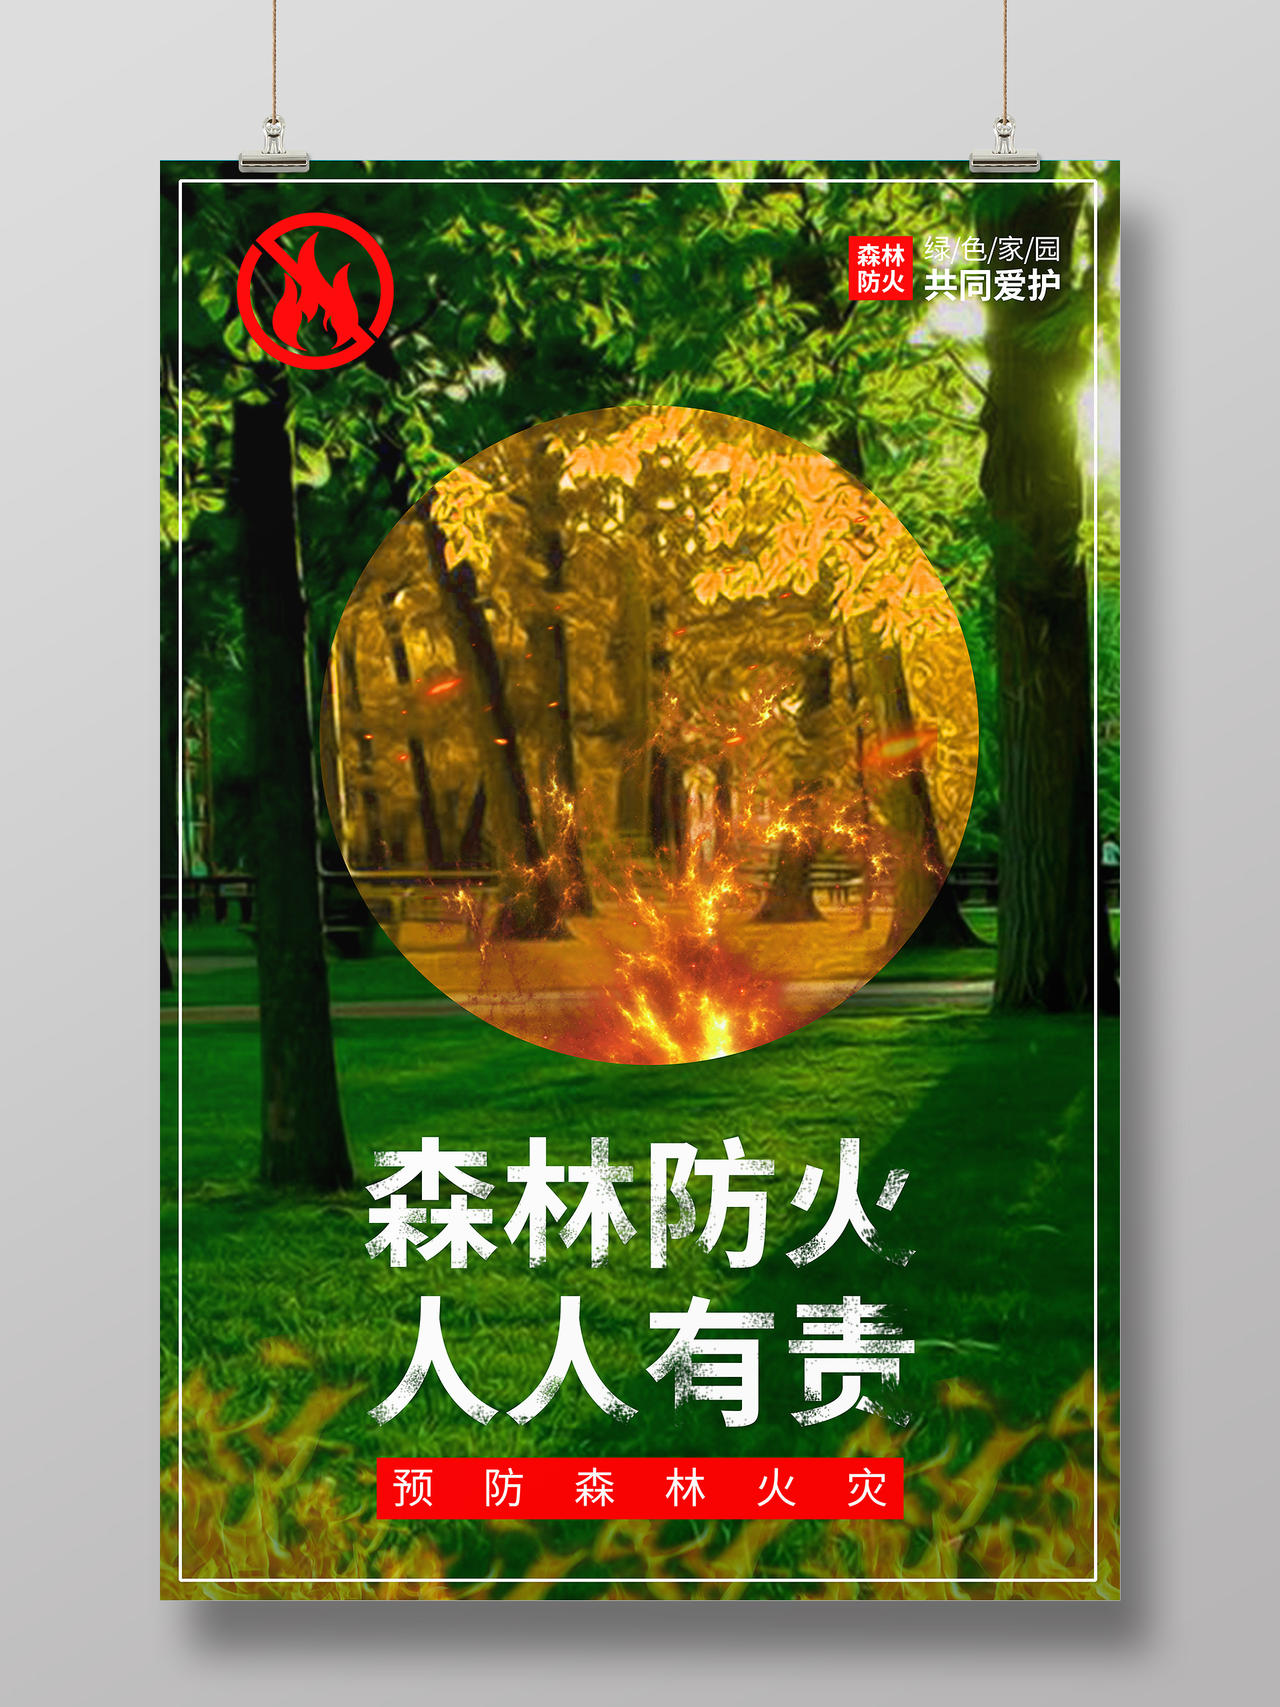 绿色系实景森林防火人人有责森林消防宣传海报